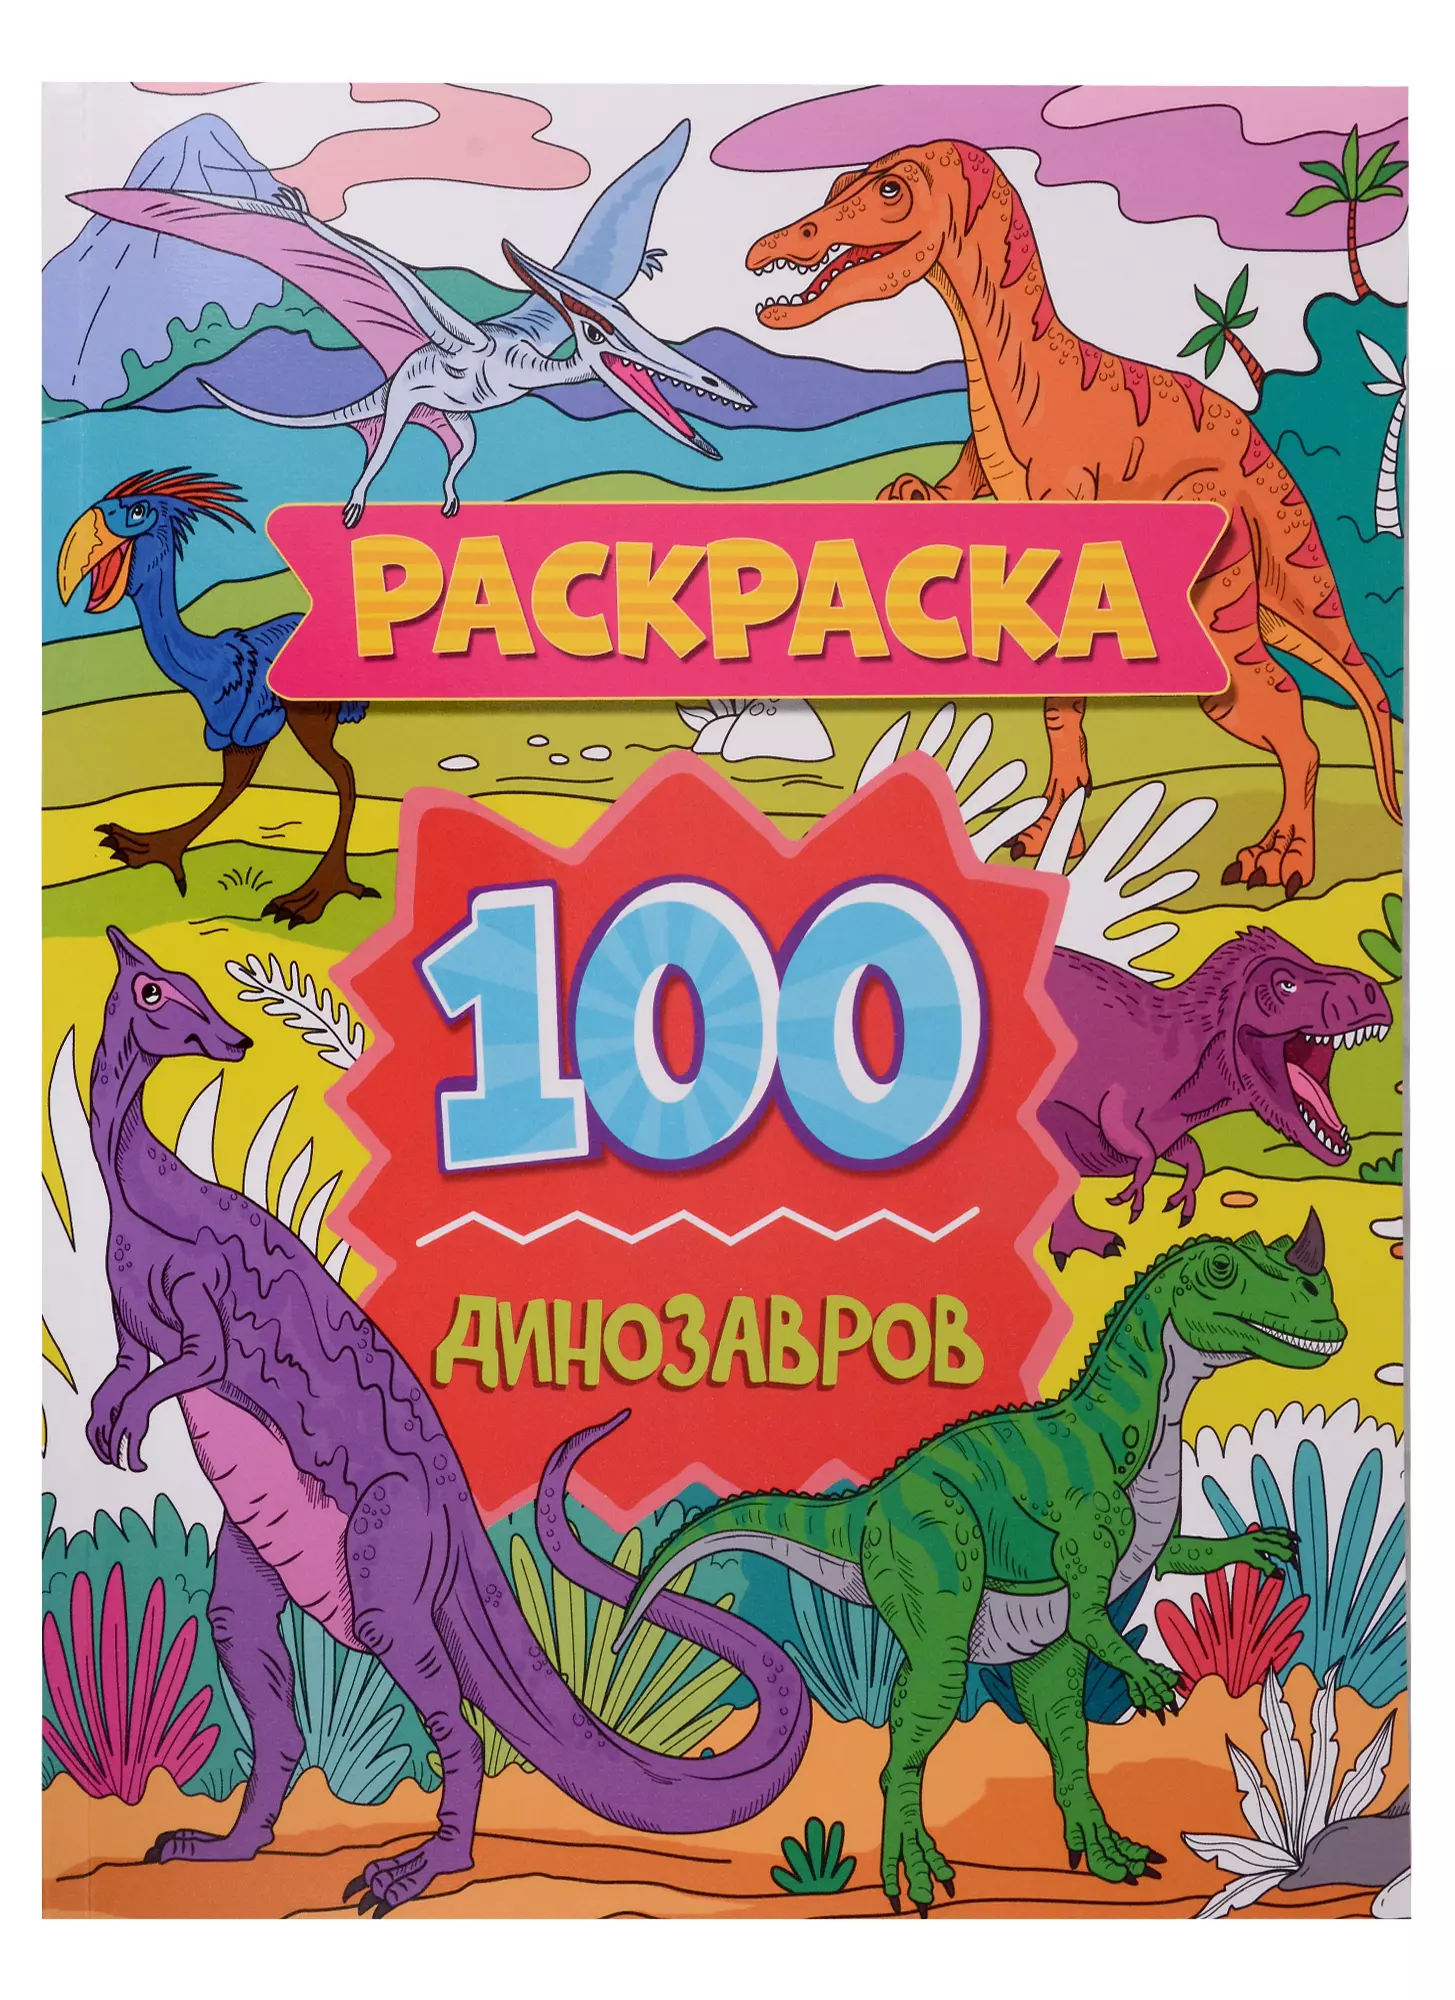 скворцова александра раскраска 100 динозавров Раскраска. 100 динозавров